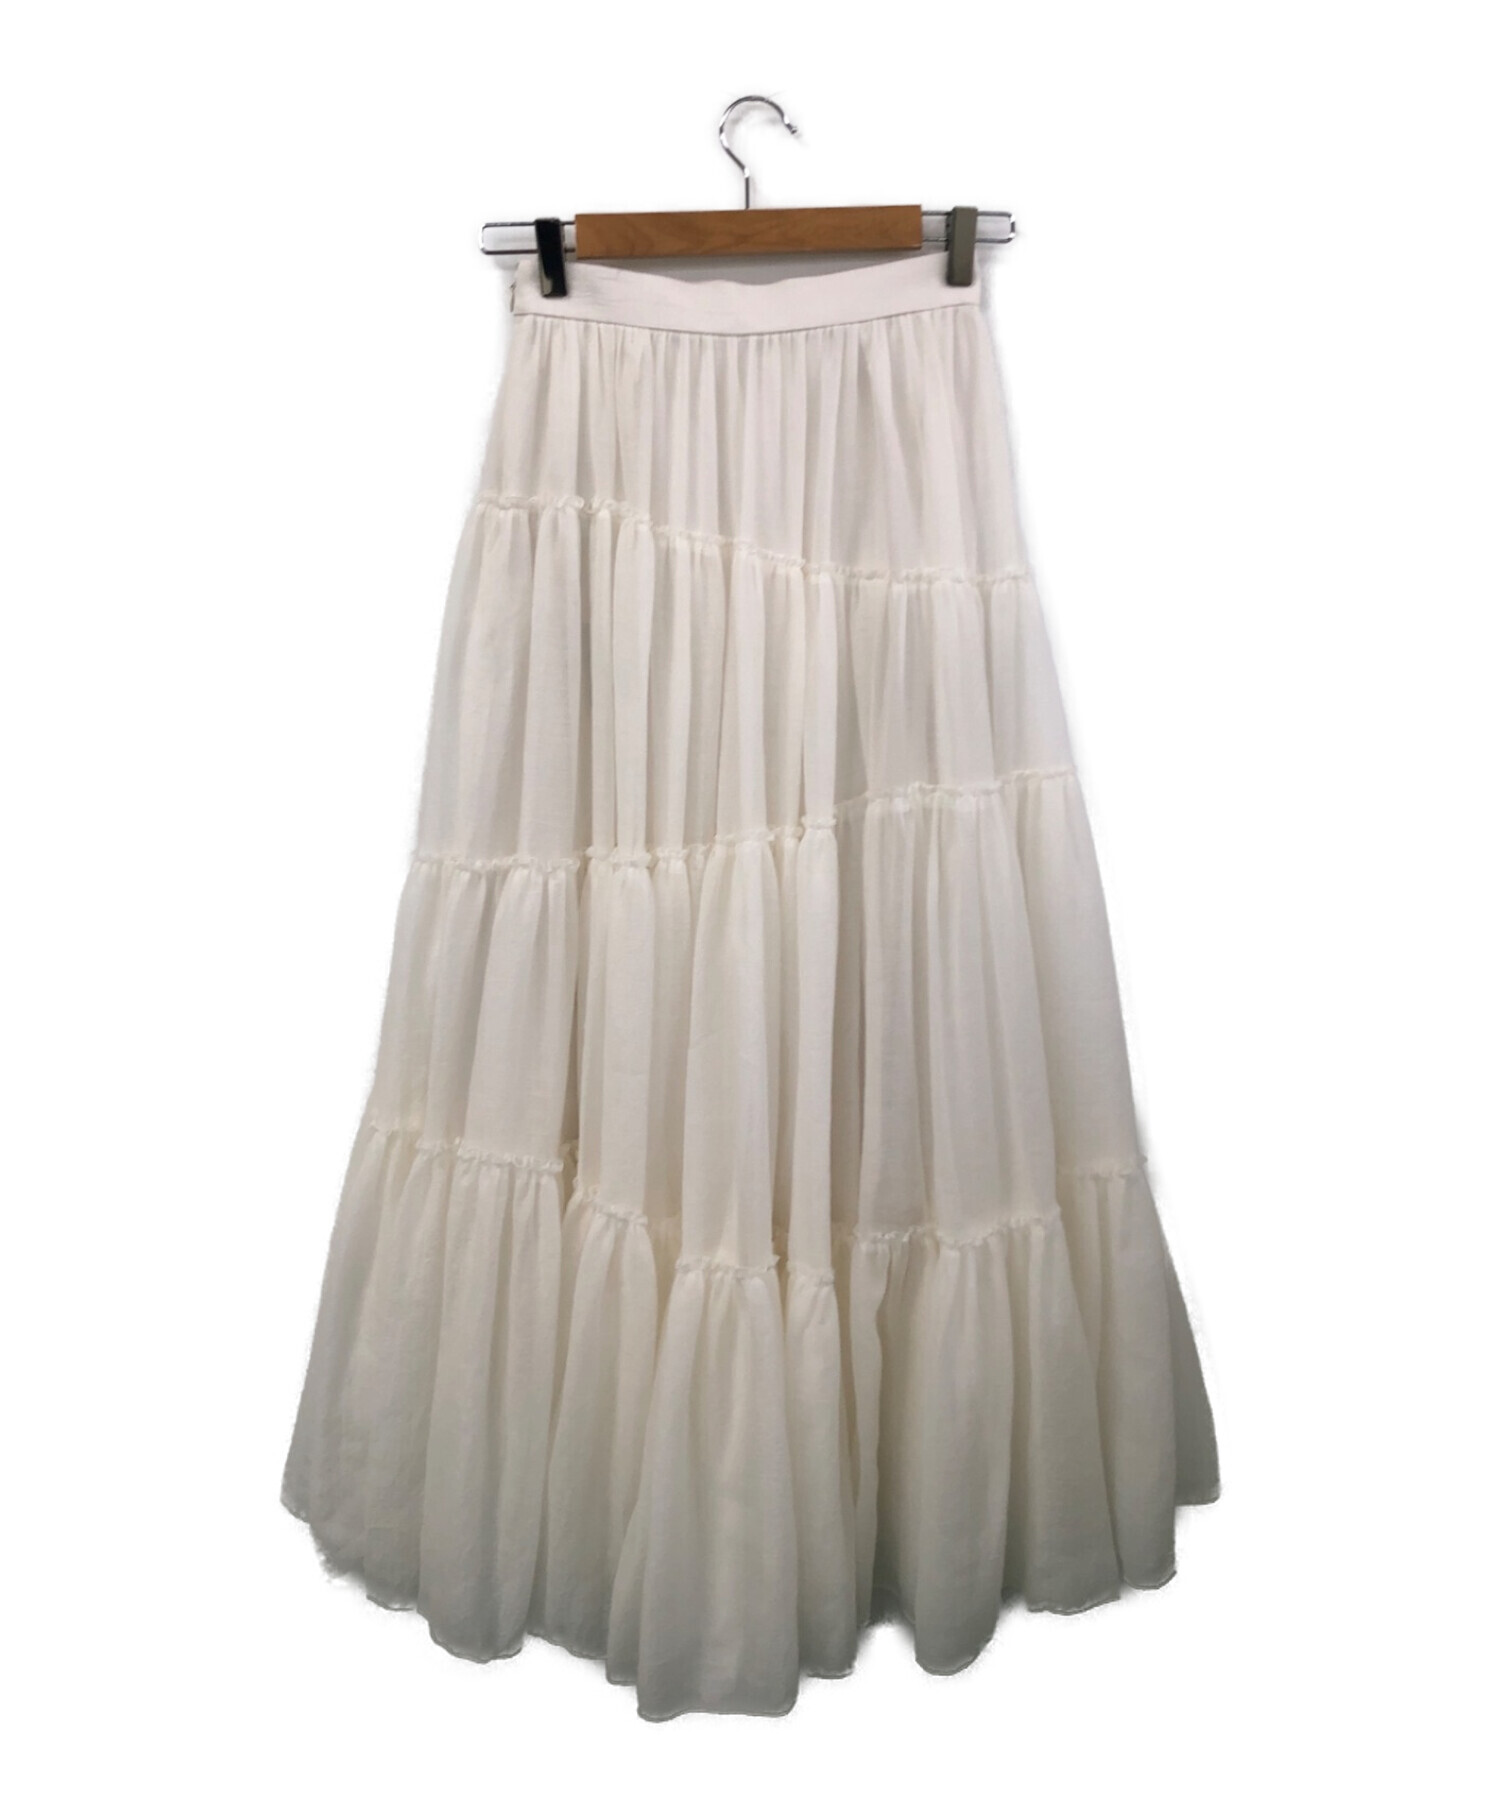 anuans ボリュームティアードオーガンジースカート ホワイトスカート丈77cm